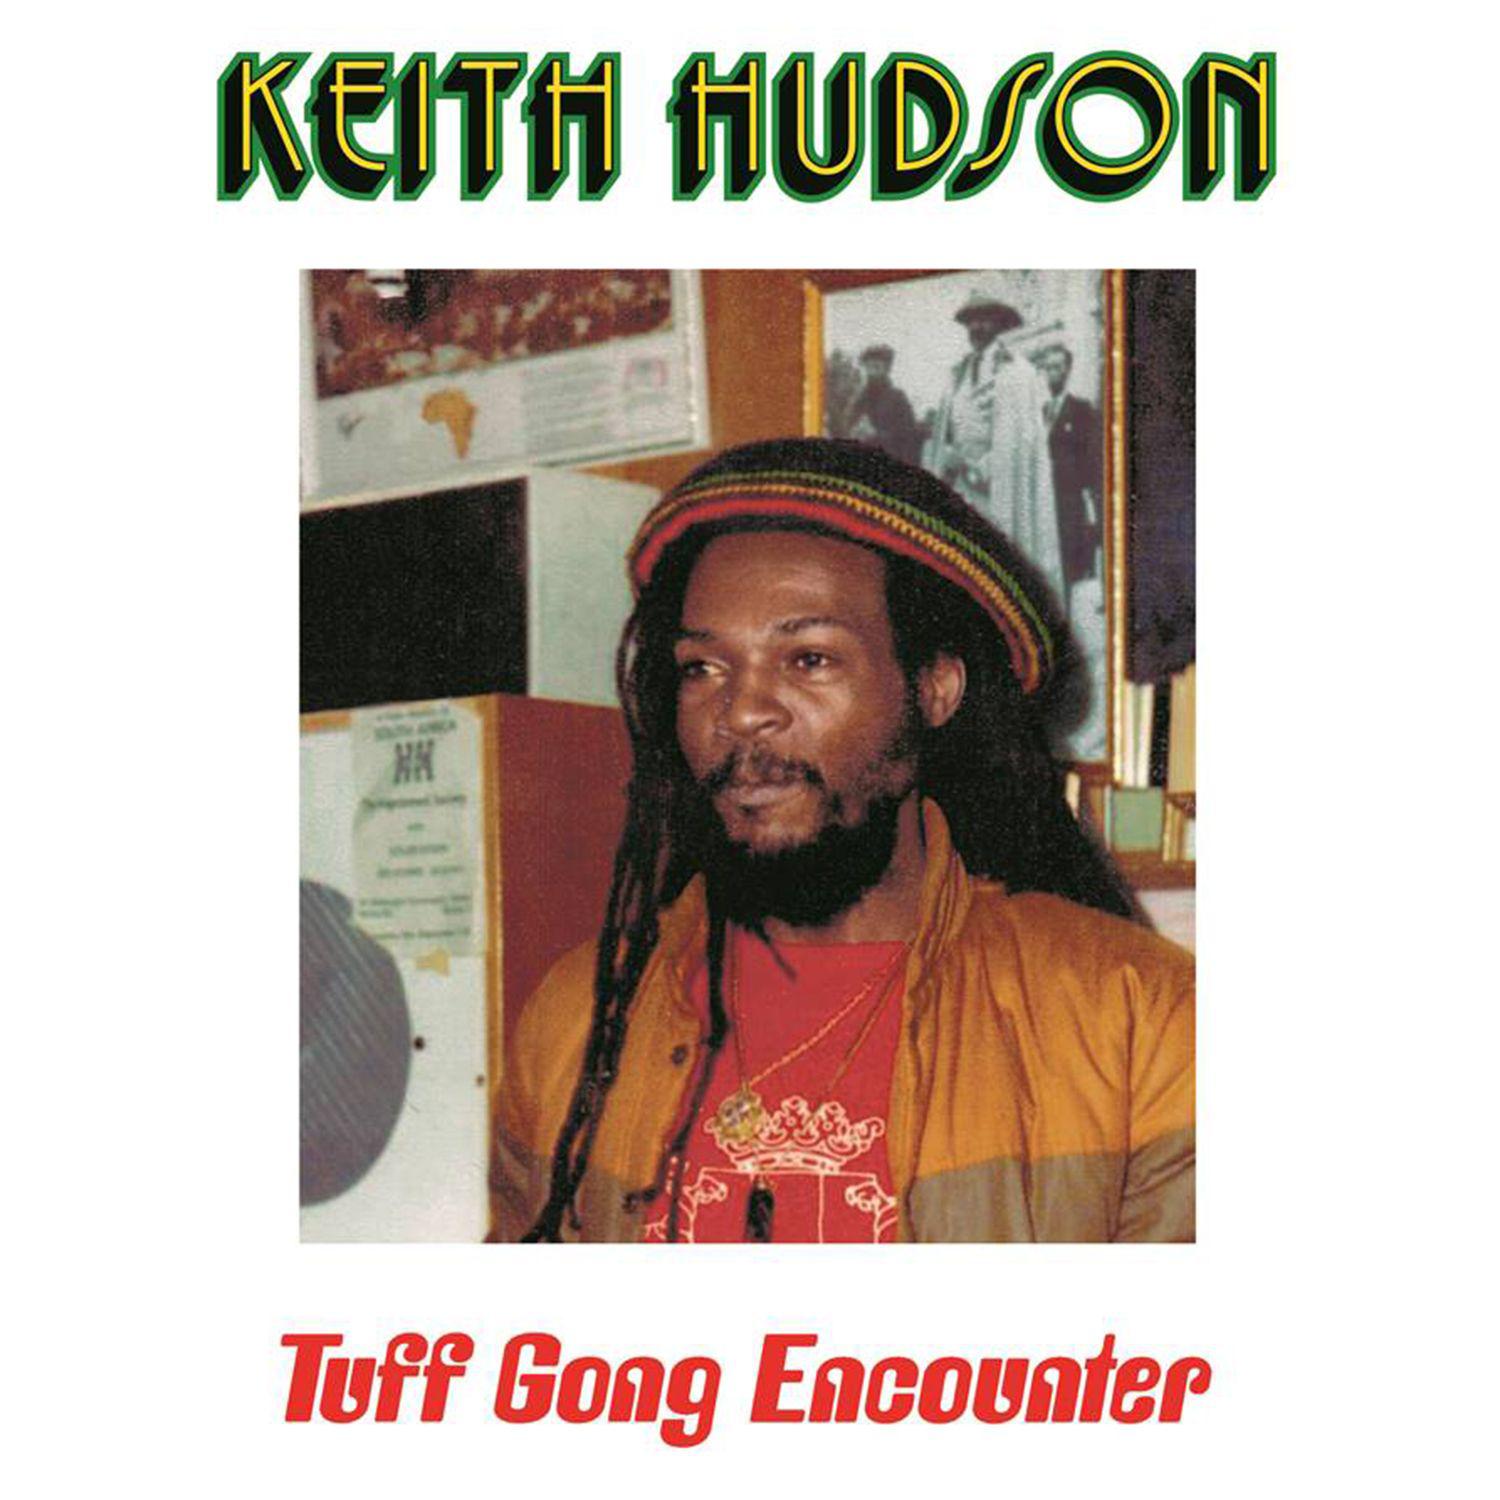 Keith Hudson - Rites of Dub